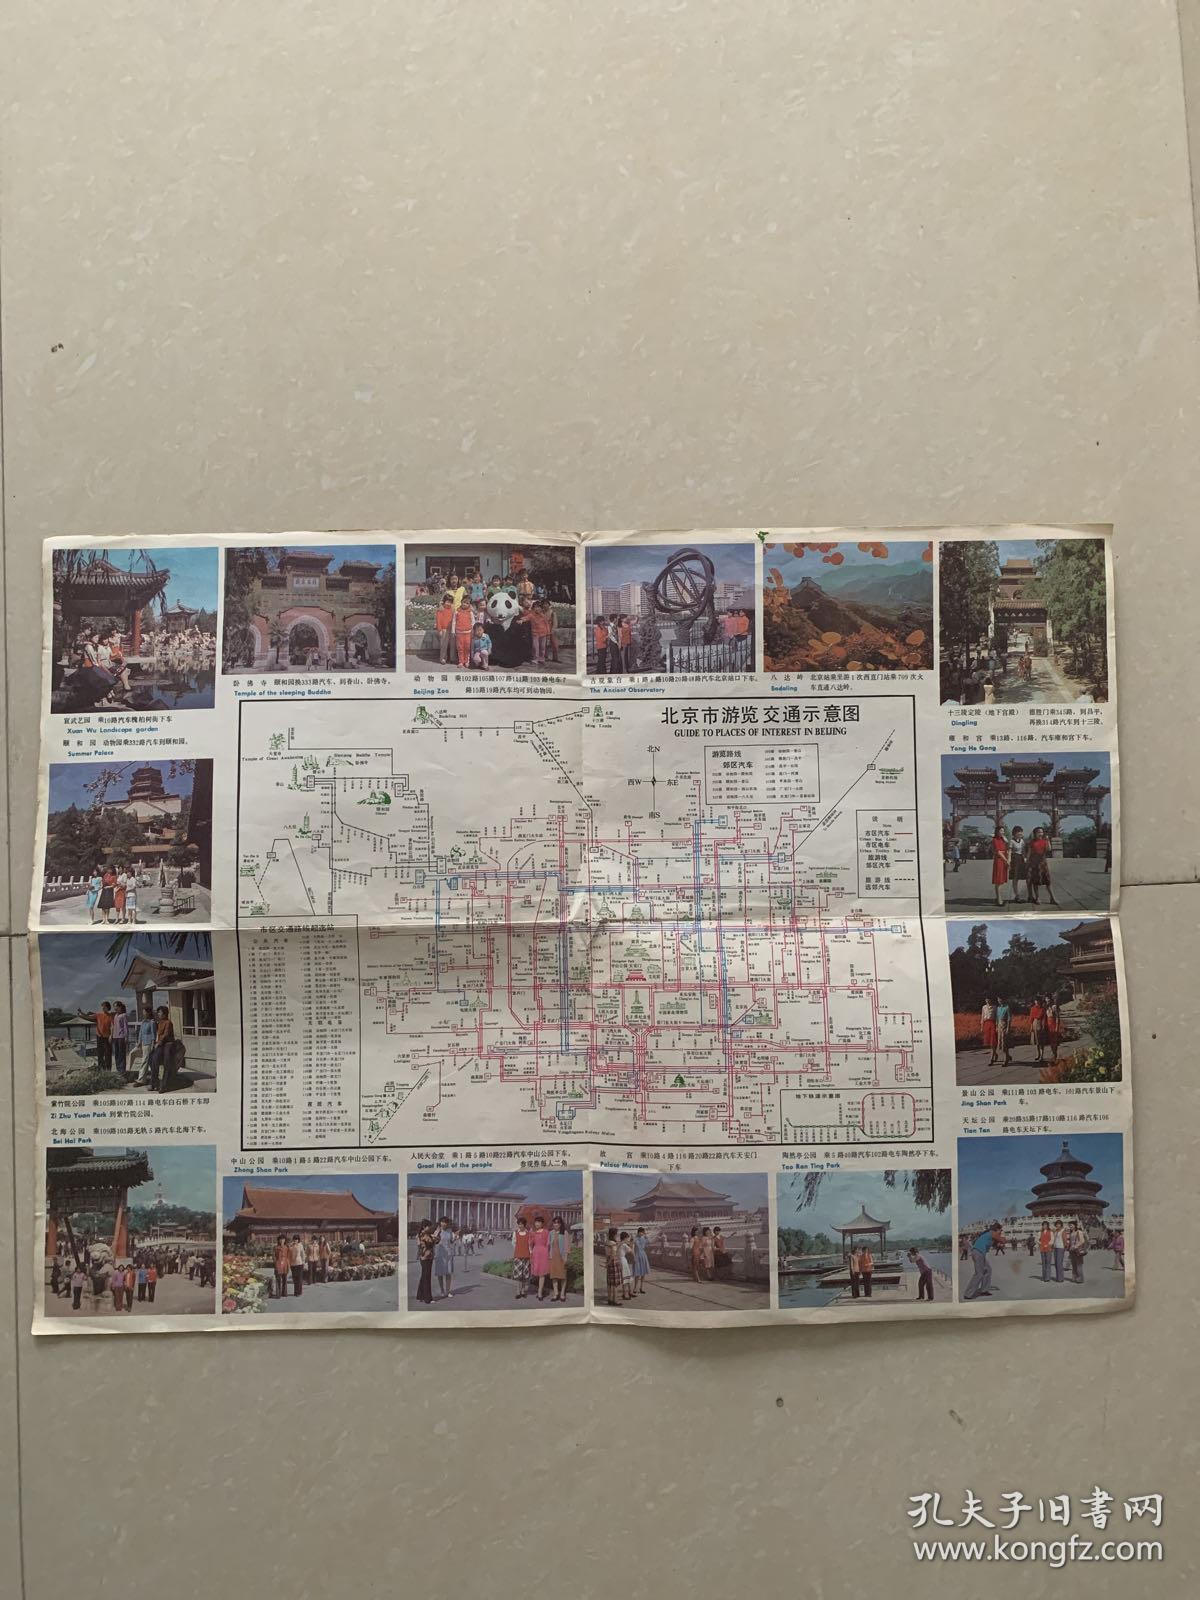 老地图:北京市游览交通示意图 1984年